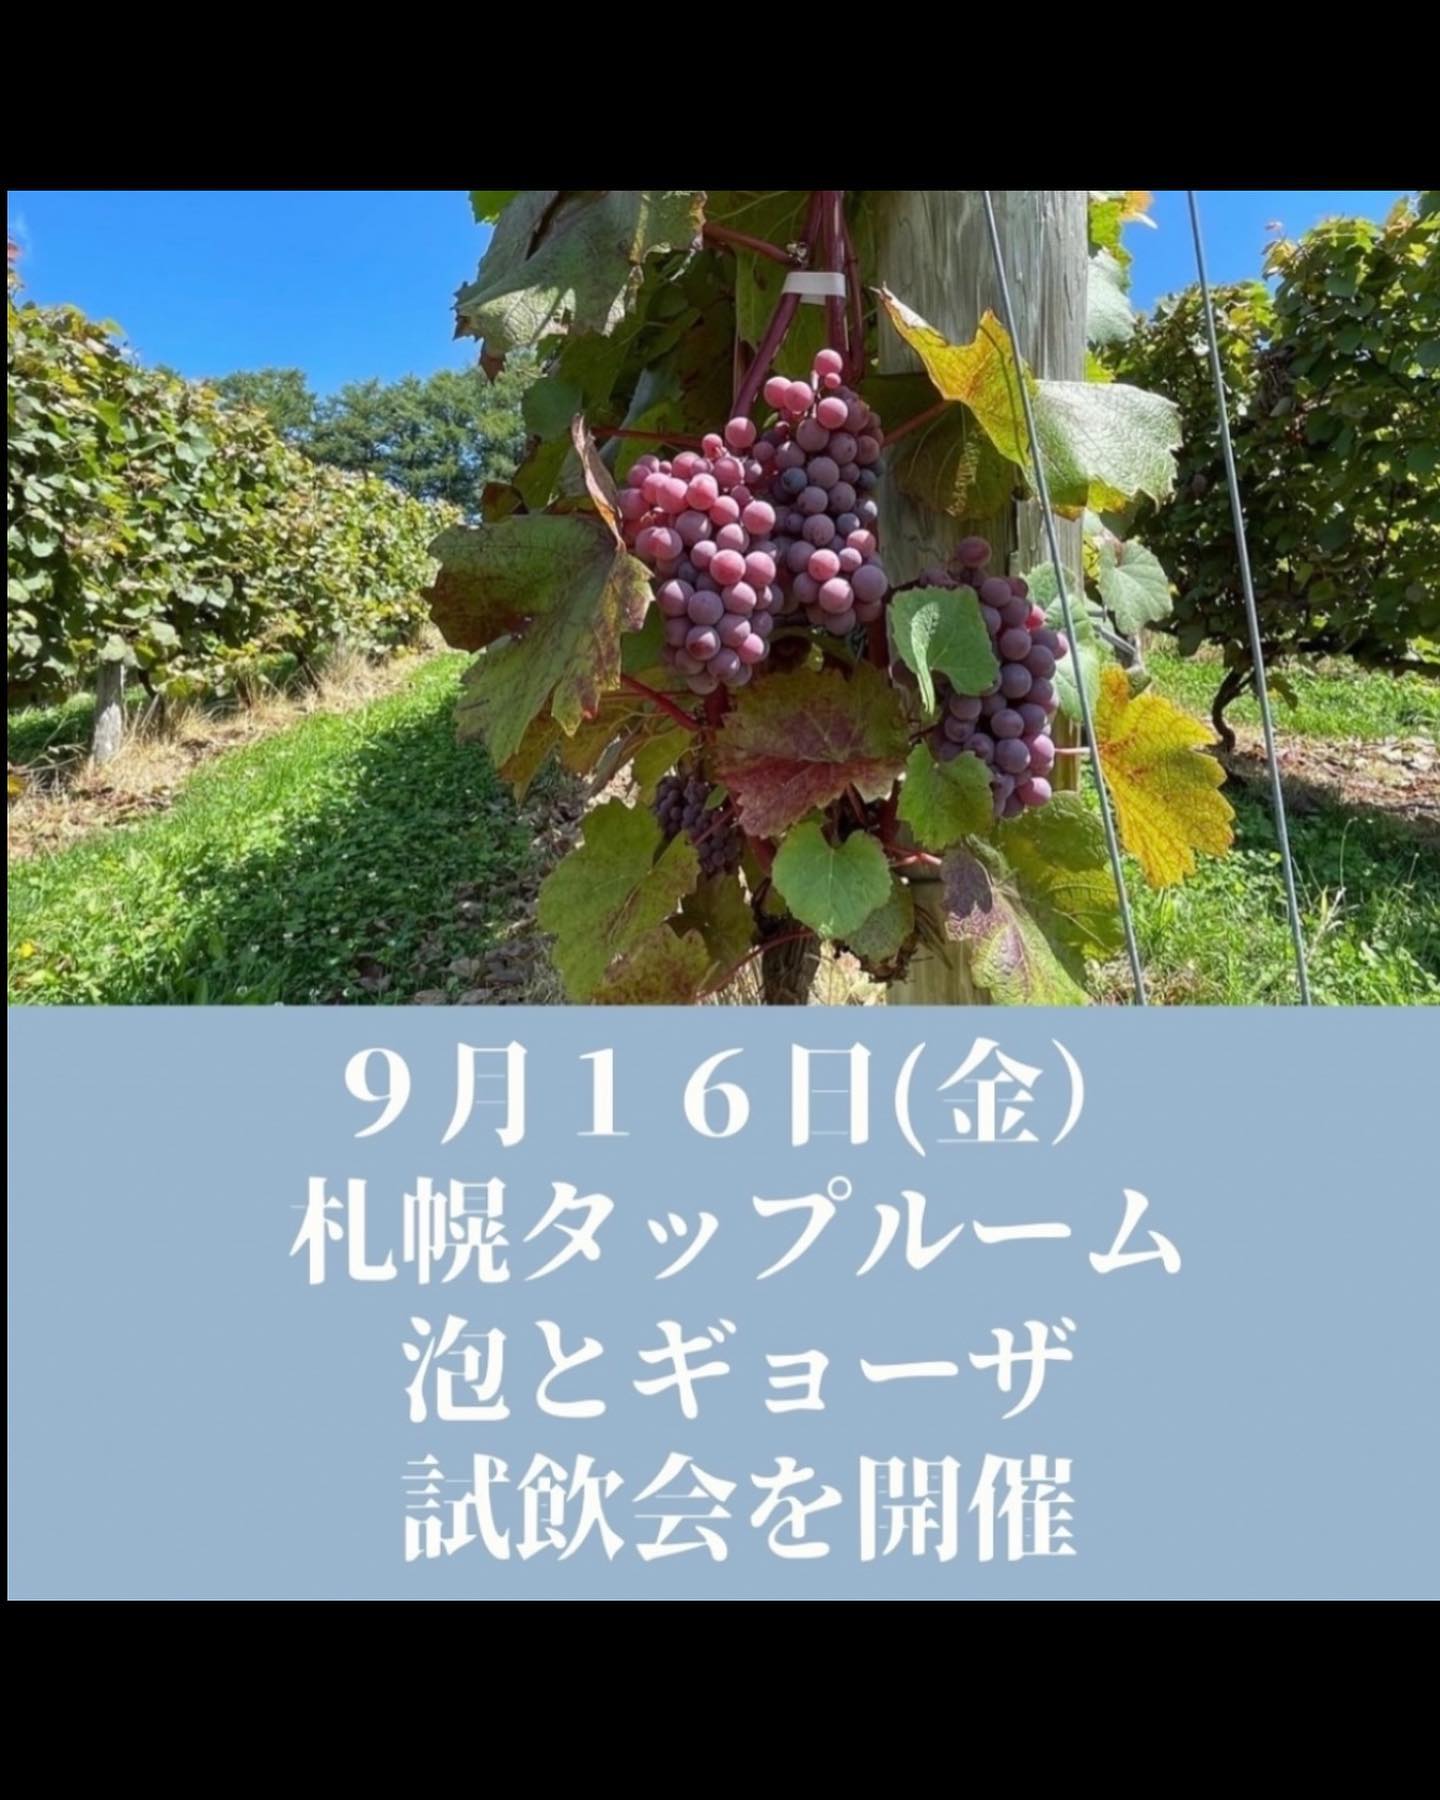 9/16日(金）OcciGabi wine試飲会